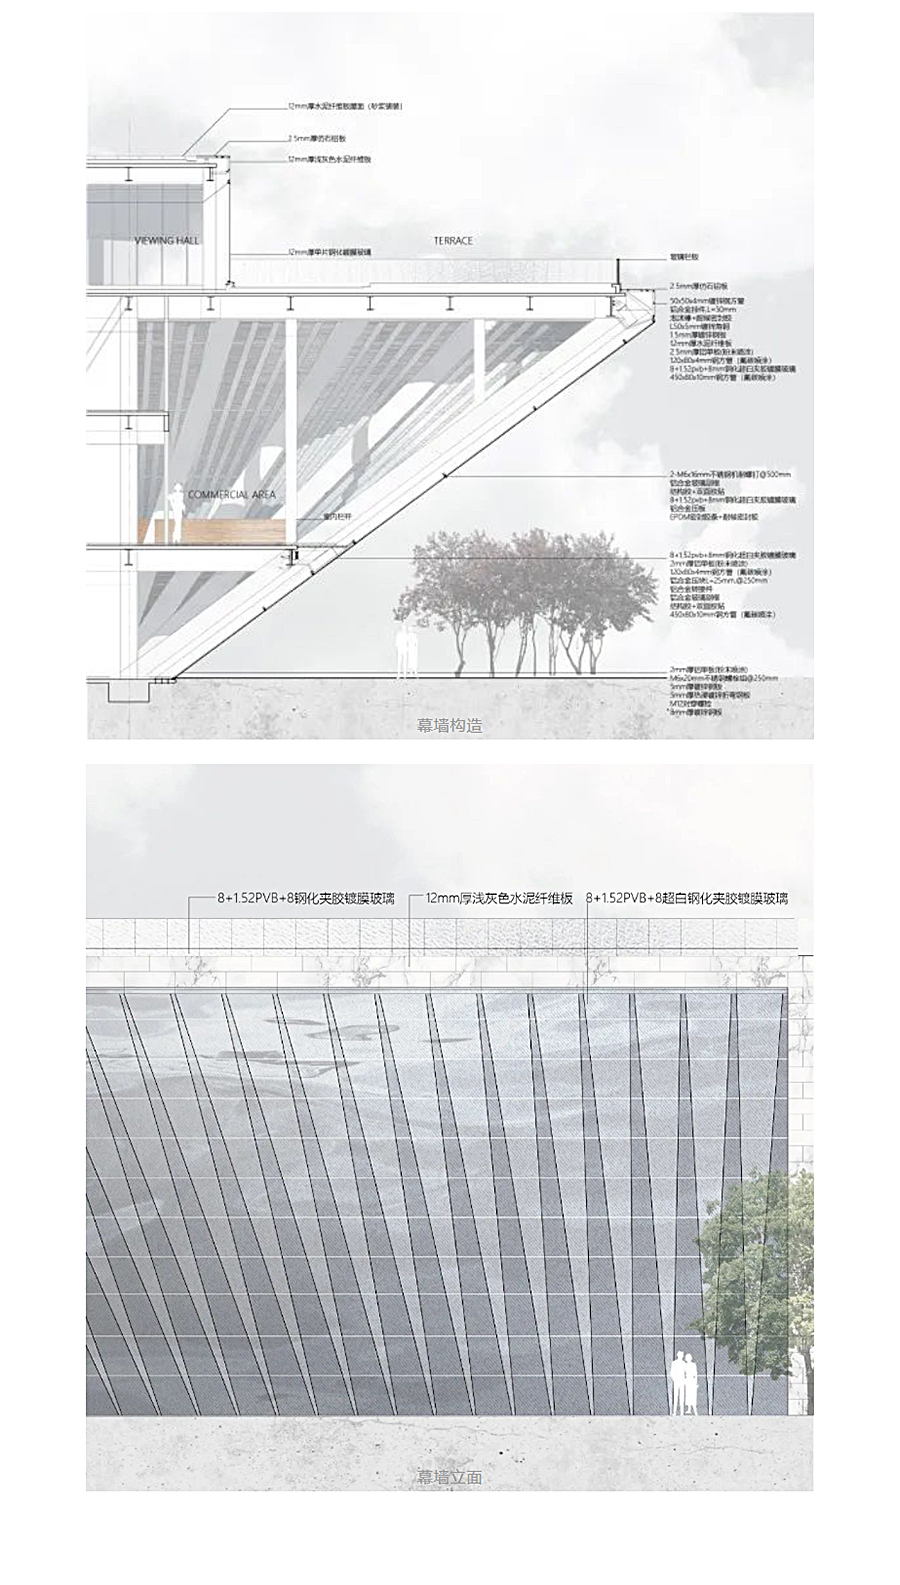 一个建筑代表一座新城-_-成都招商天府新区城市规划展示馆_0027_图层-28.jpg